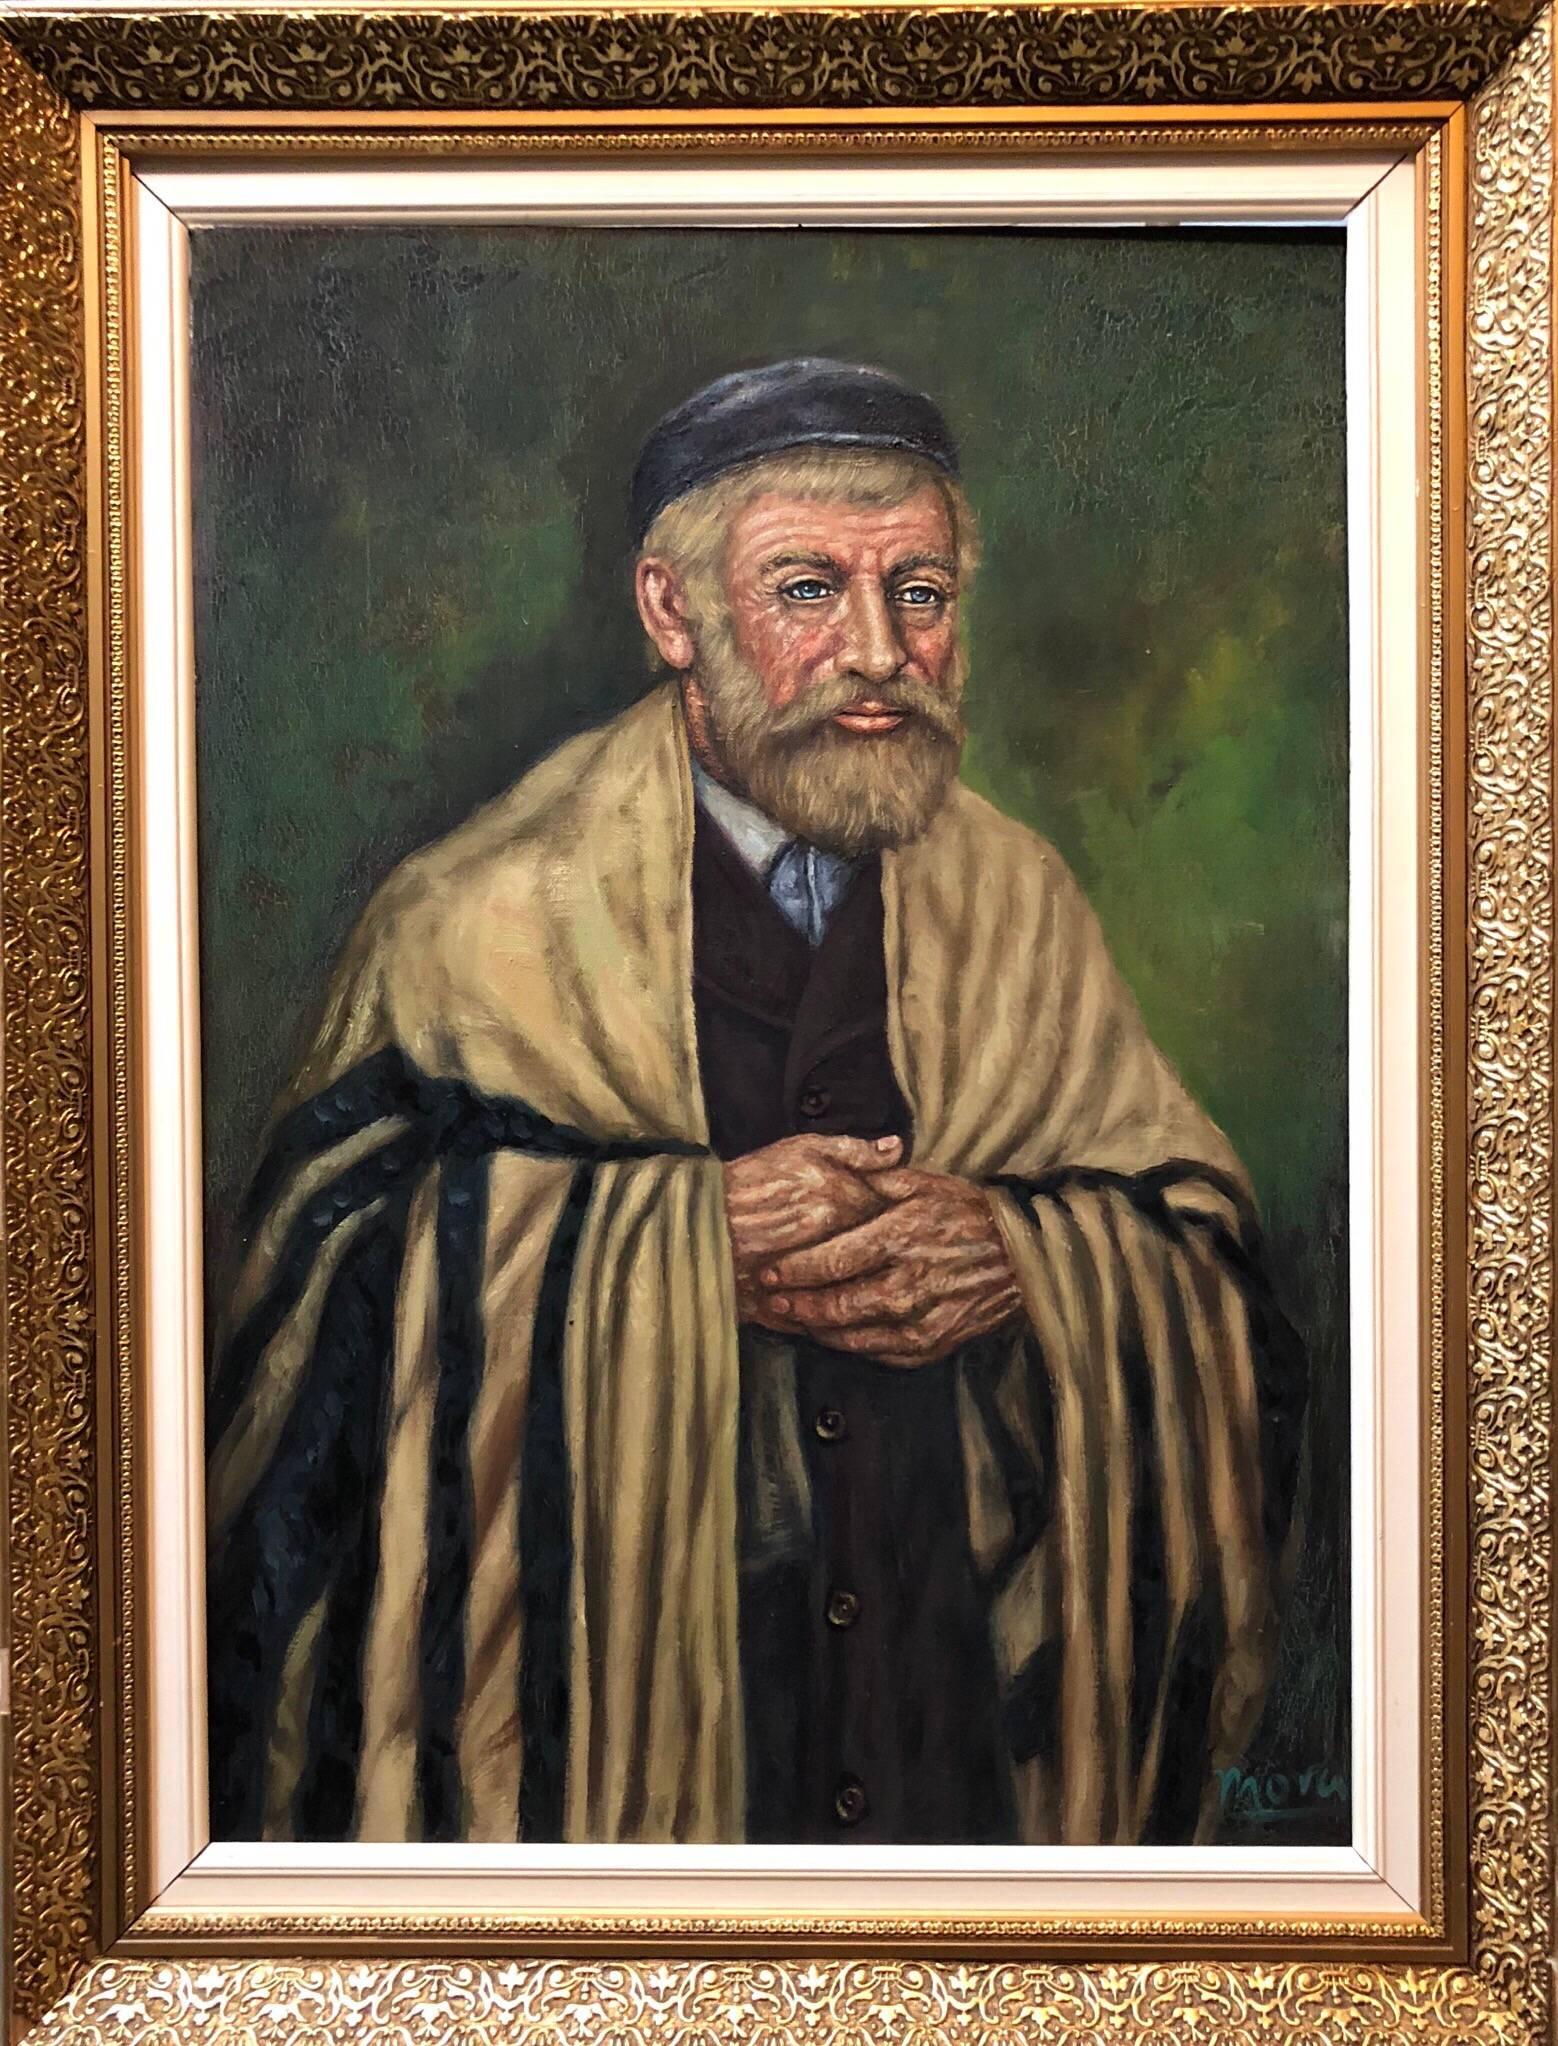 Rare peinture à l'huile moderniste d'un érudit judaïque représentant un lapin dans un Synagogue, signée Mora - Painting de Unknown